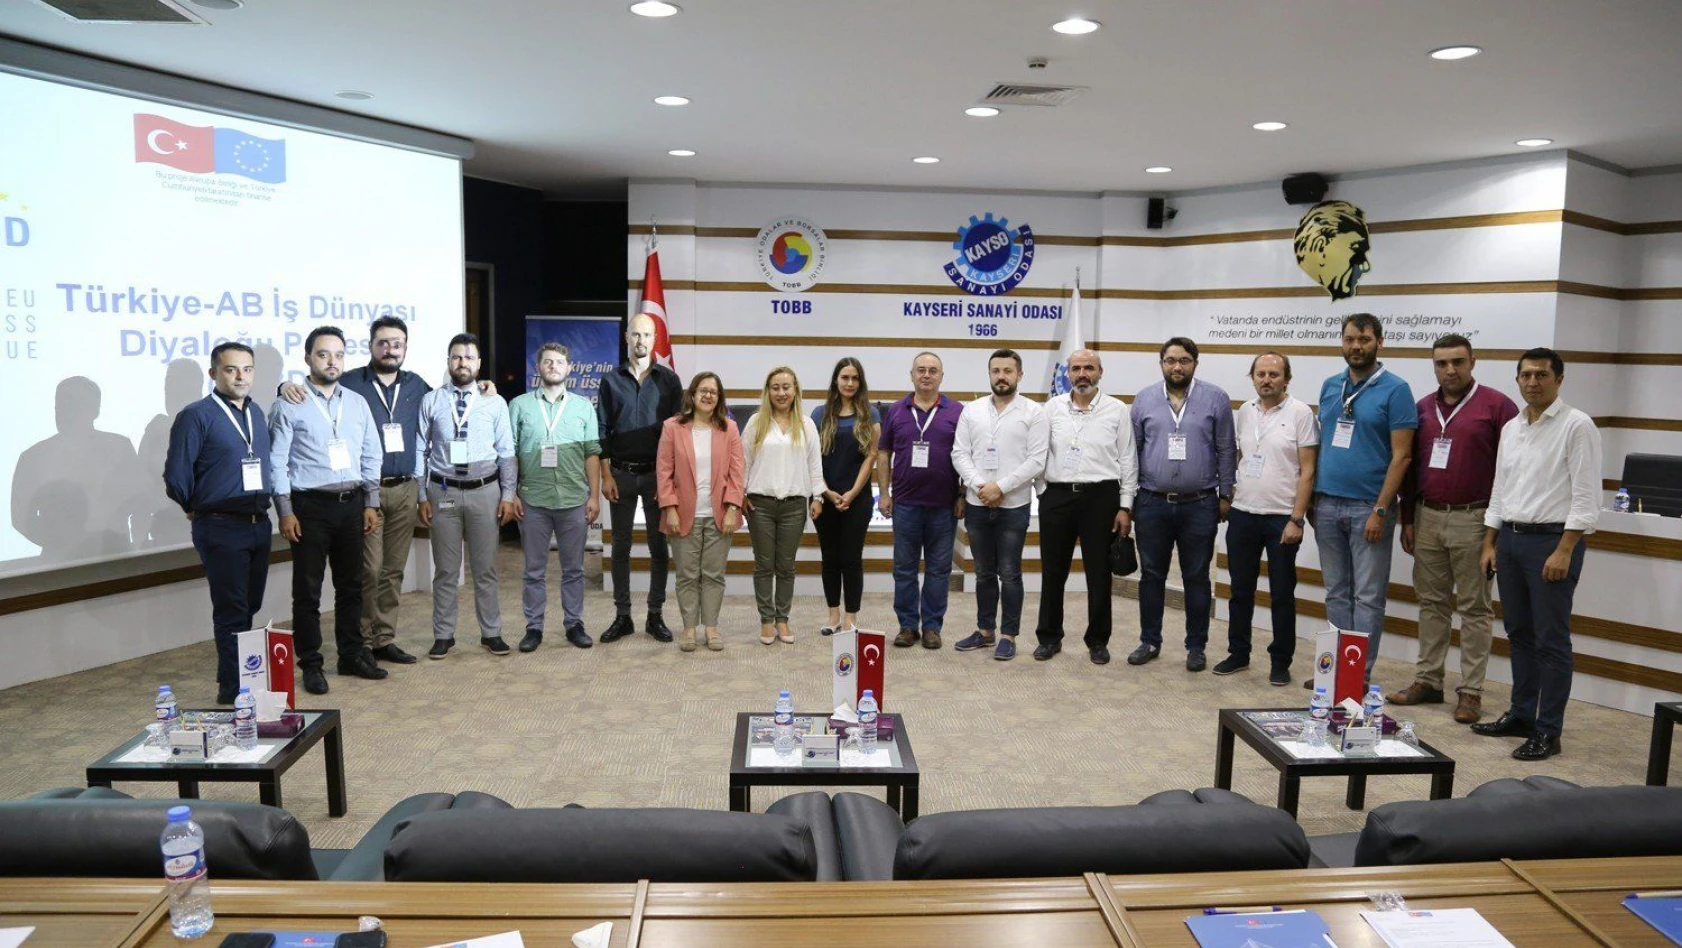 KAYSO'da 'Türkiye-AB İş dünyası Diyaloğu' KOBİ çalıştayı düzenlendi